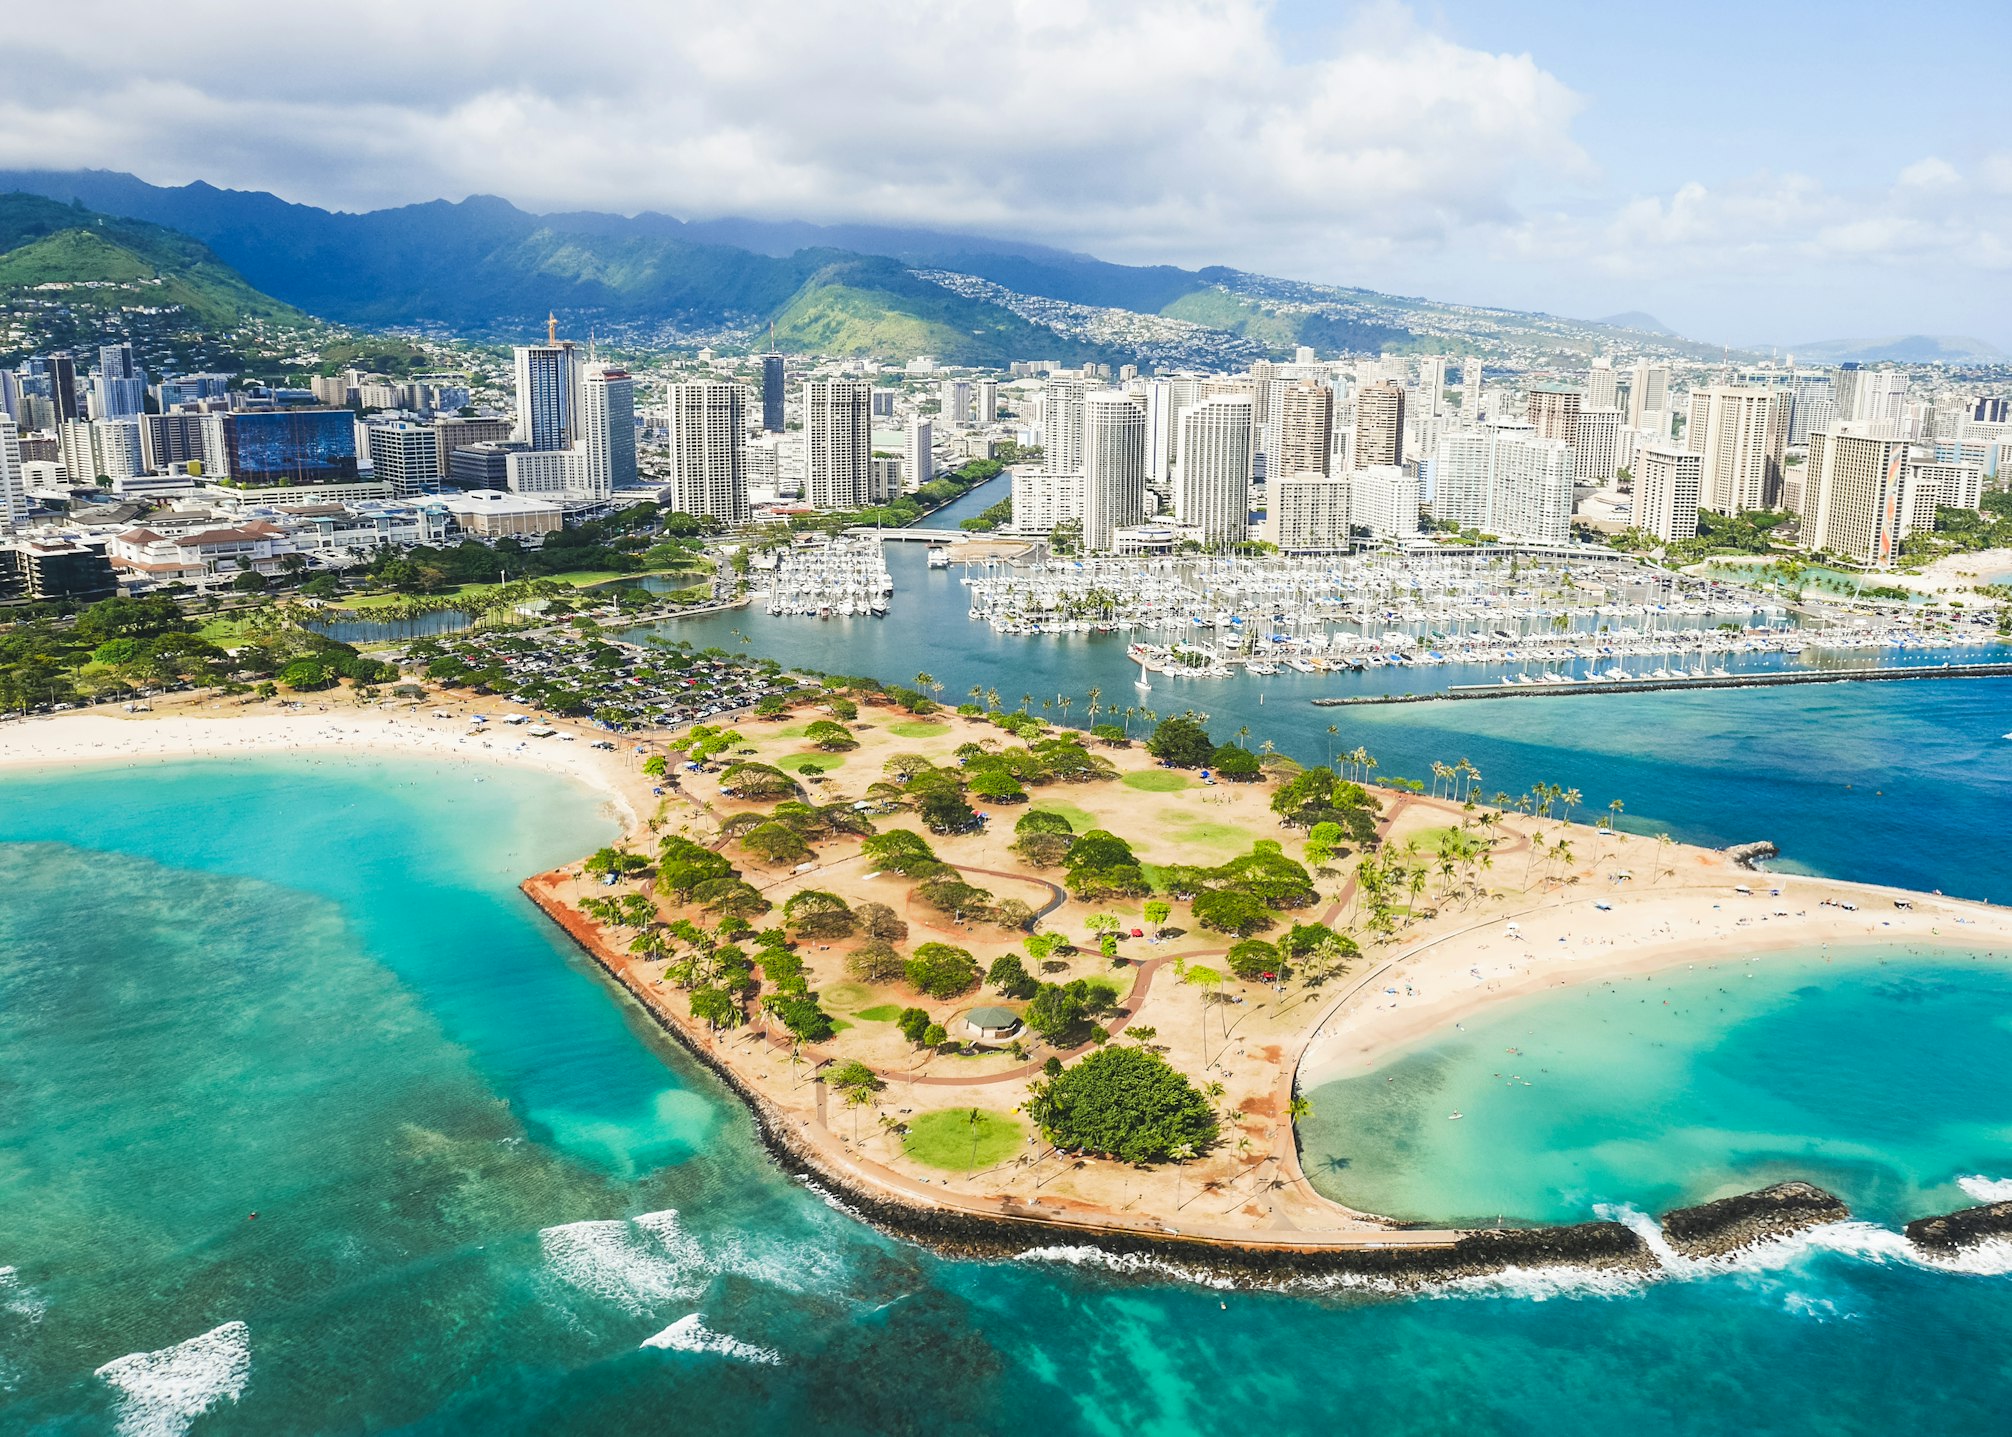 Honolulu image